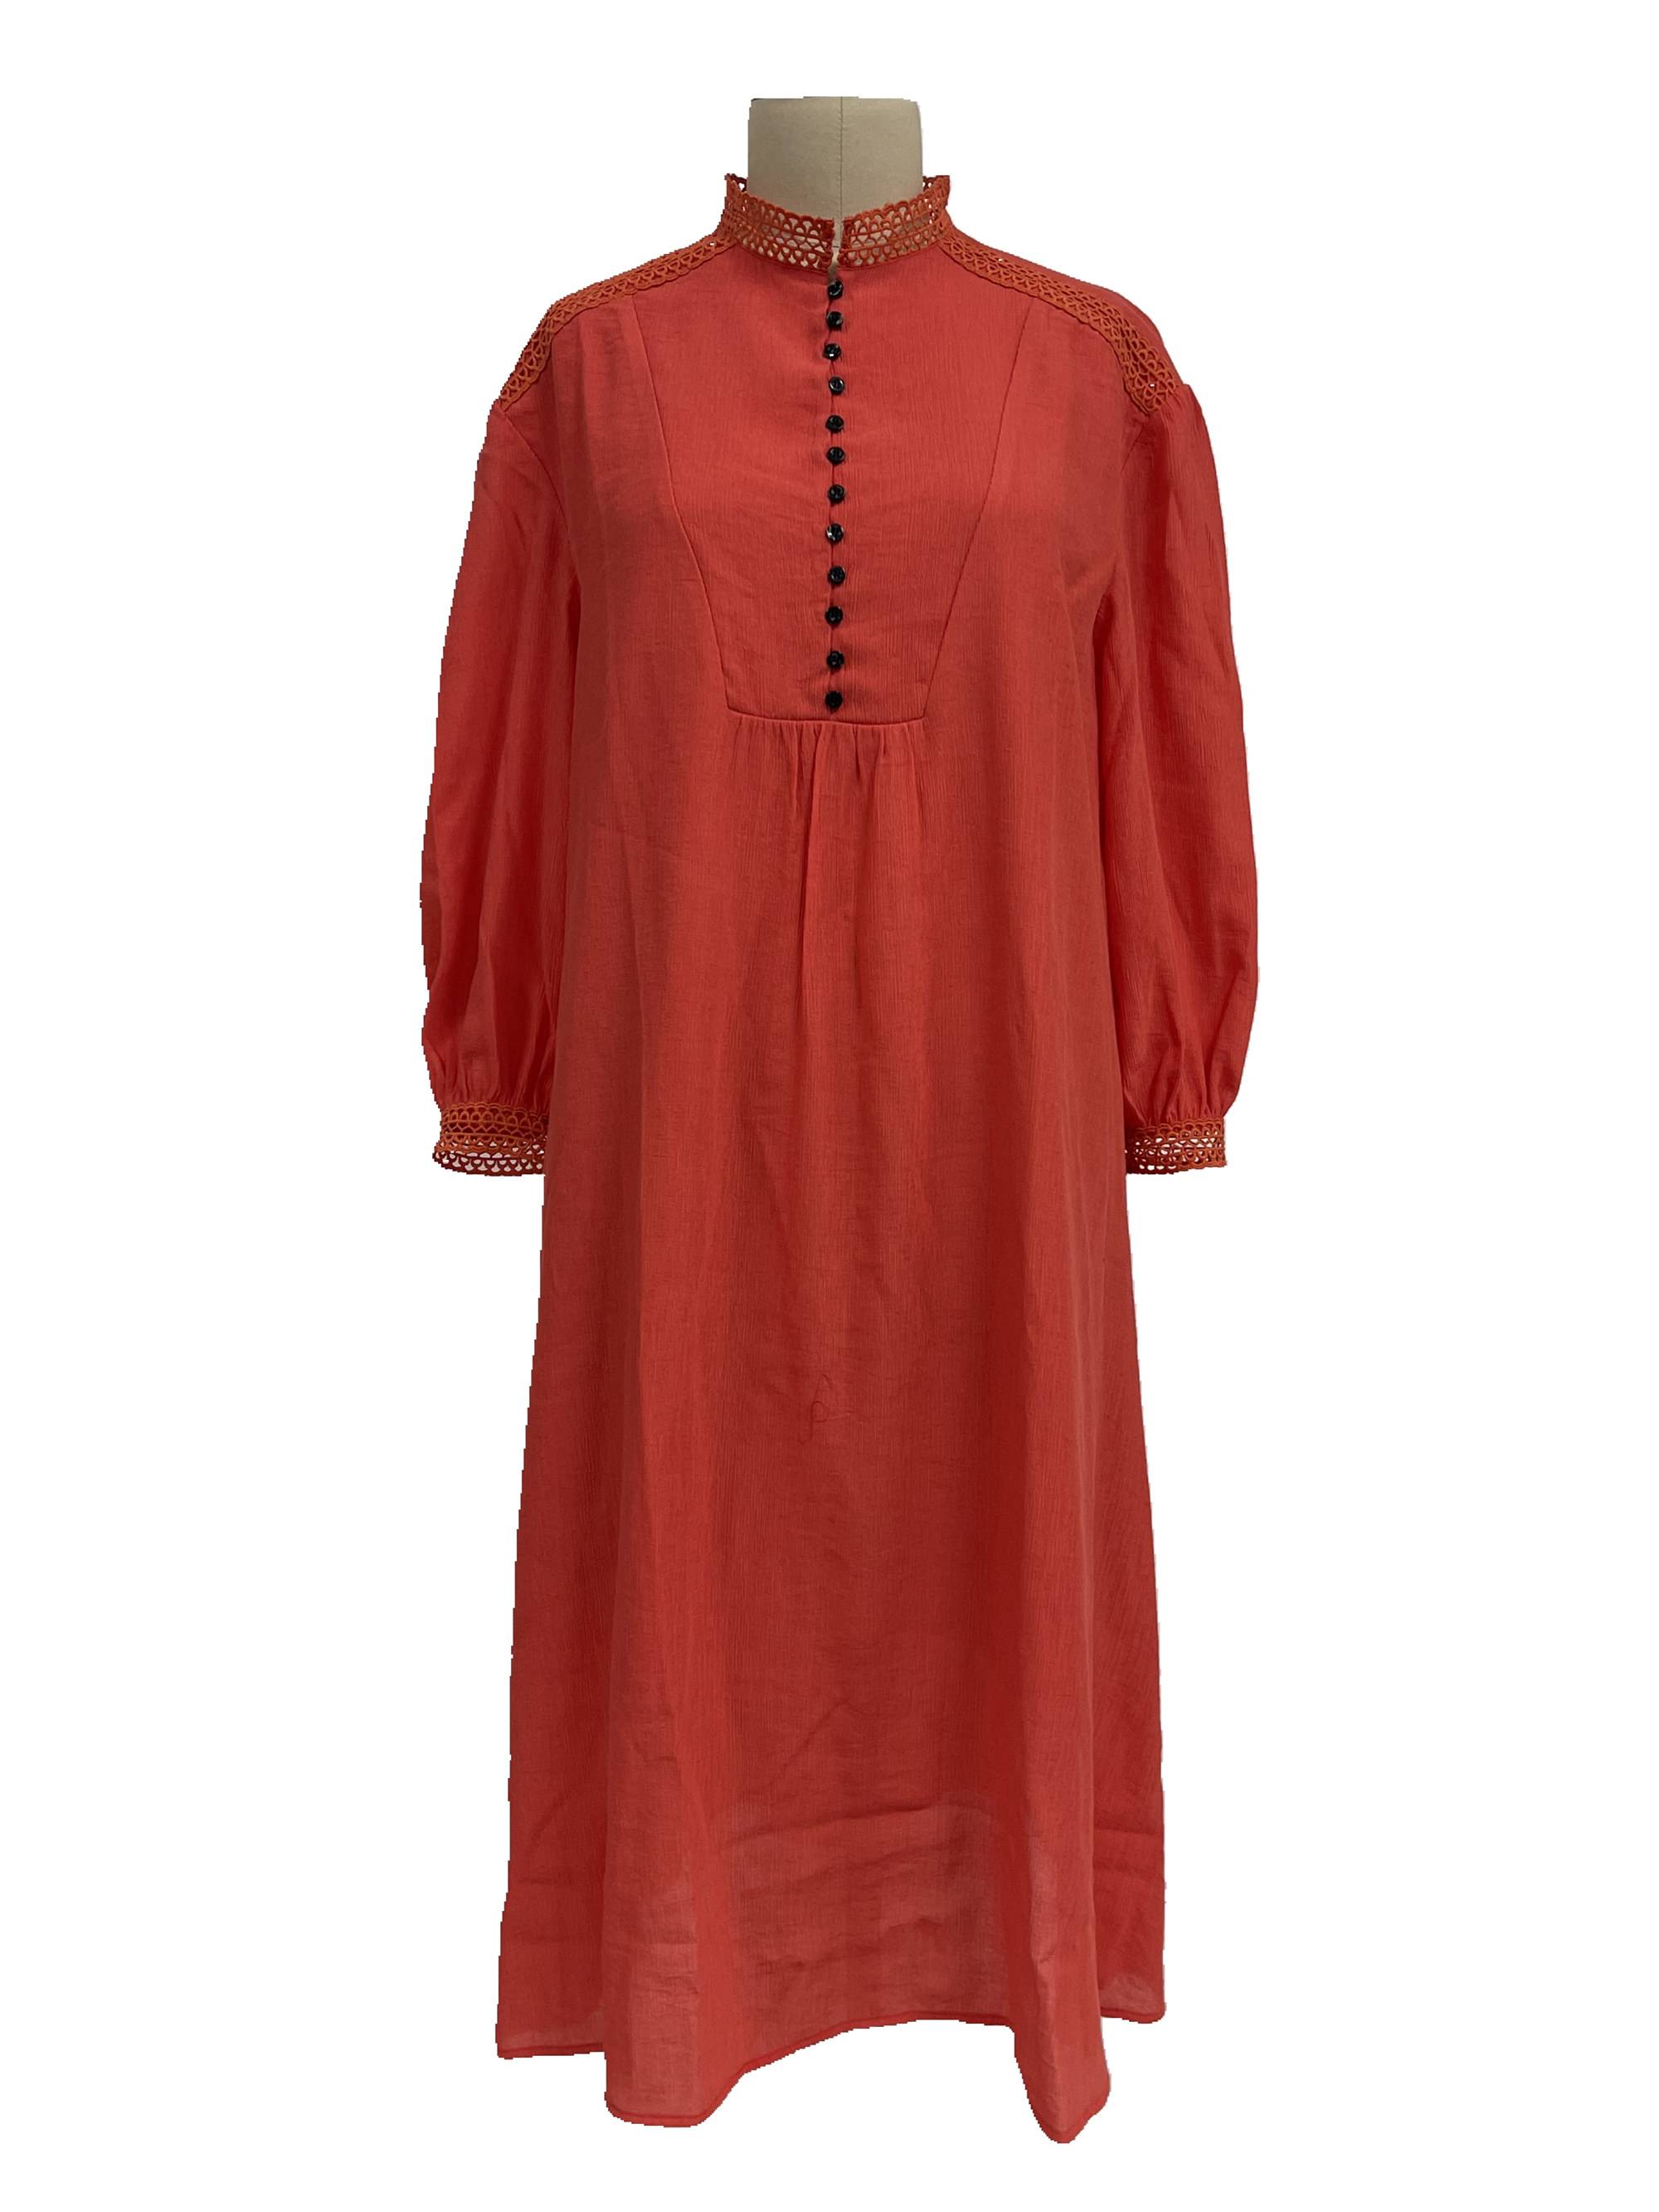 레이스 세부 드레스 여성 도매와 2021 현대 크레이프 긴 소매 드레스